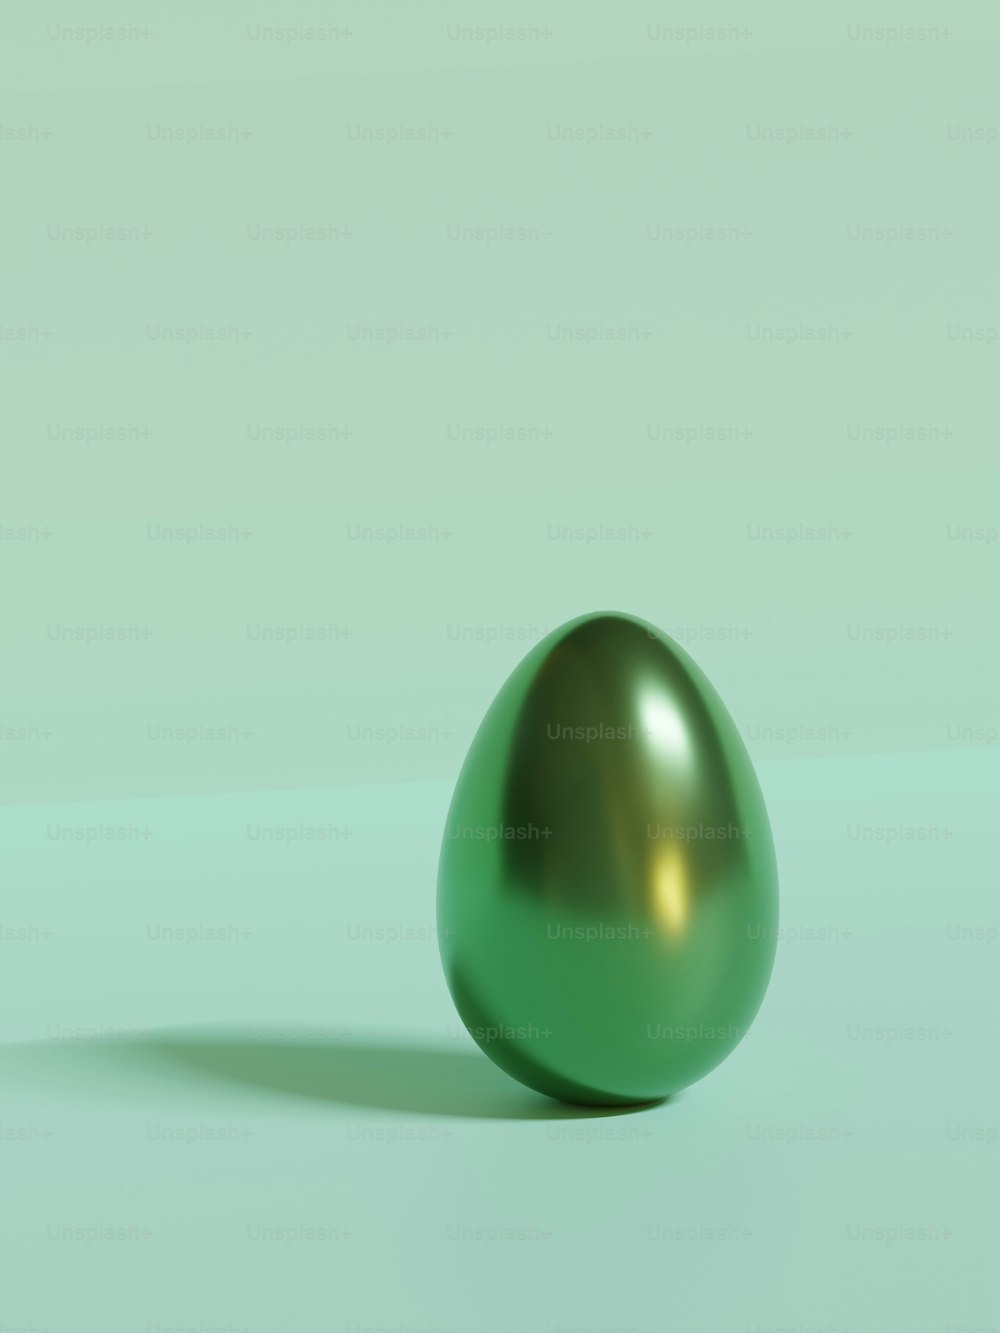 옅은 녹색 배경에 반짝이는 녹색 달걀